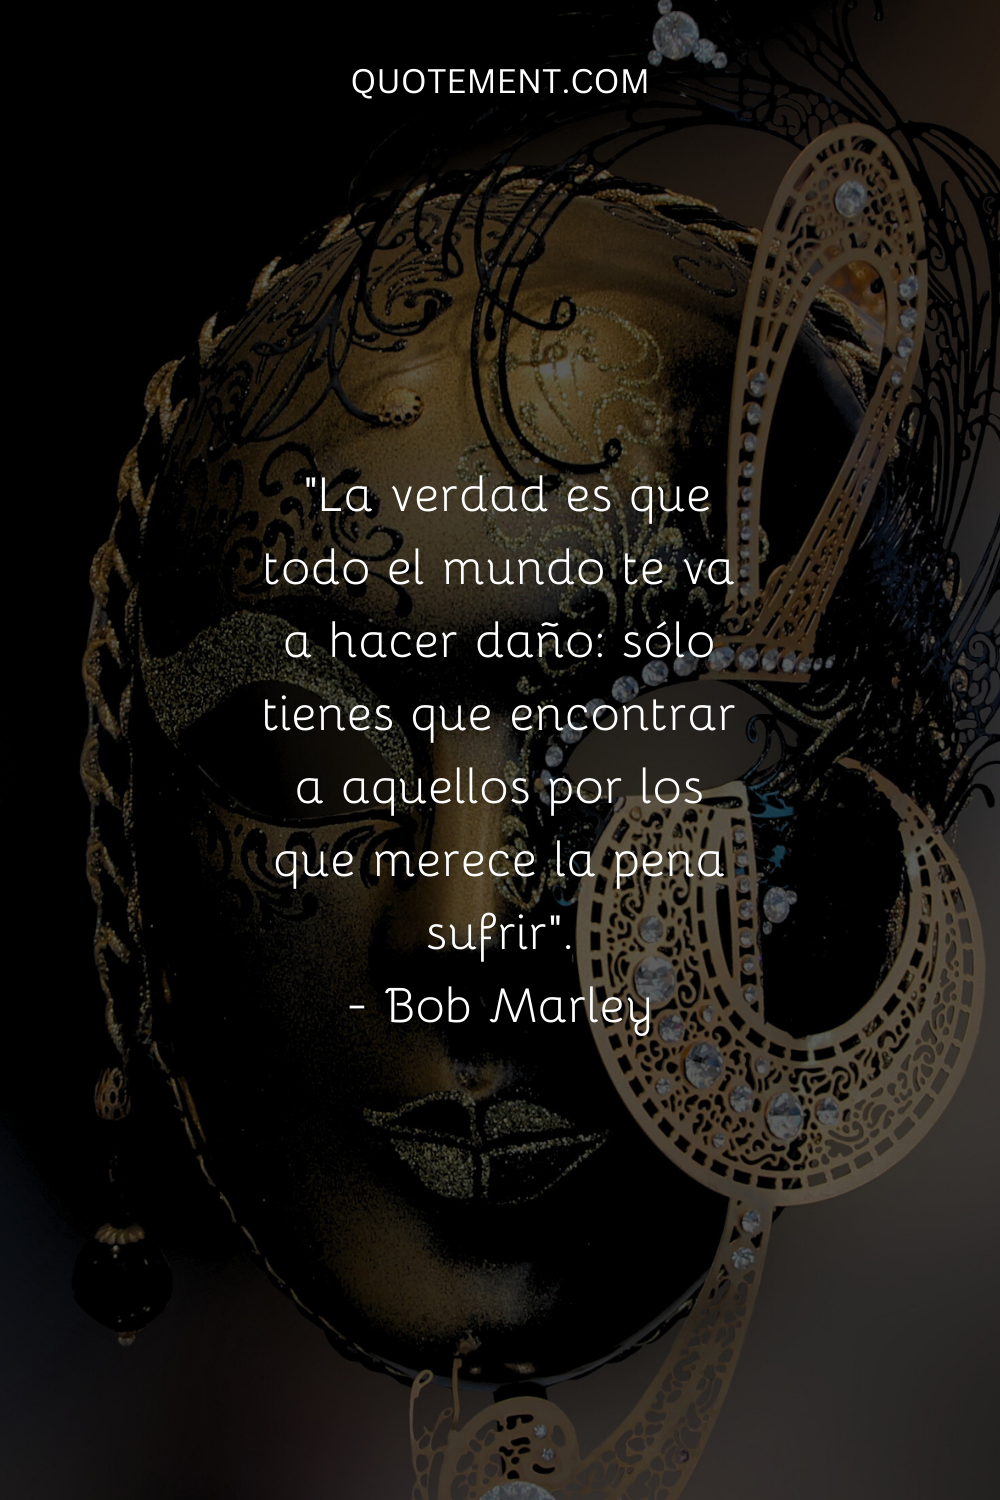 "La verdad es que todo el mundo te va a hacer daño, sólo tienes que encontrar a aquellos por los que merece la pena sufrir". - Bob Marley